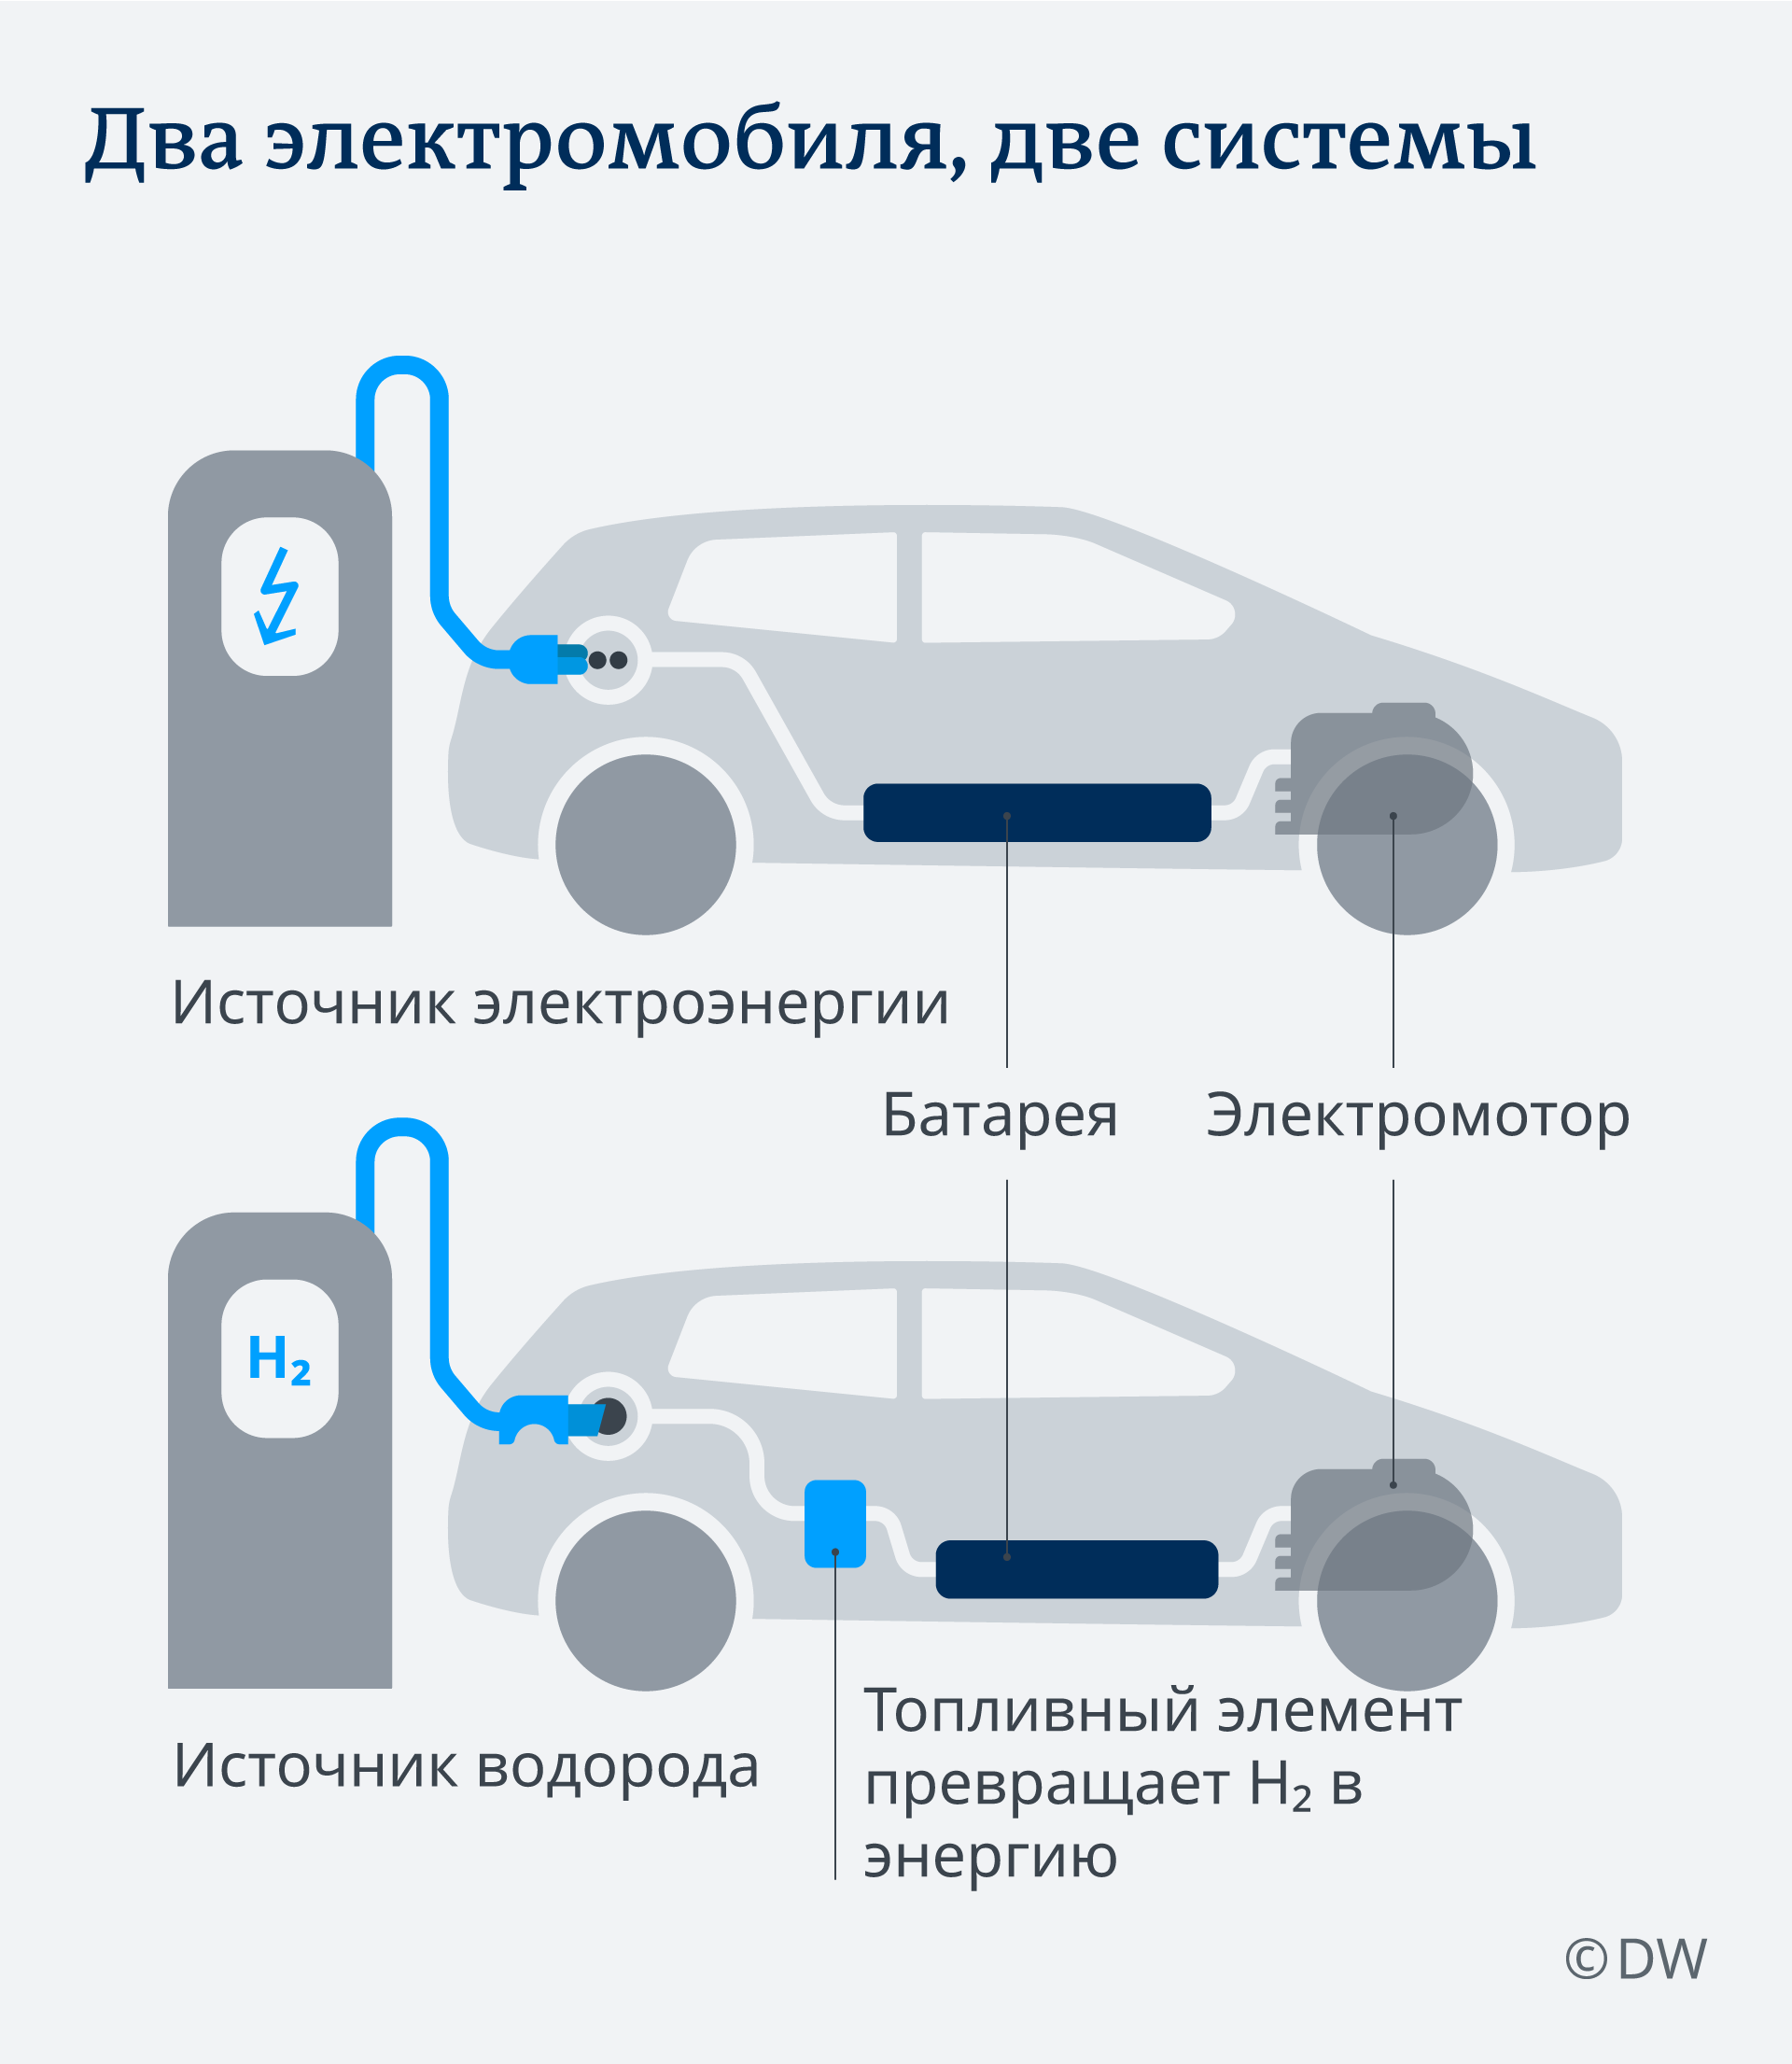 Инфографика Два электромобиля, две системы